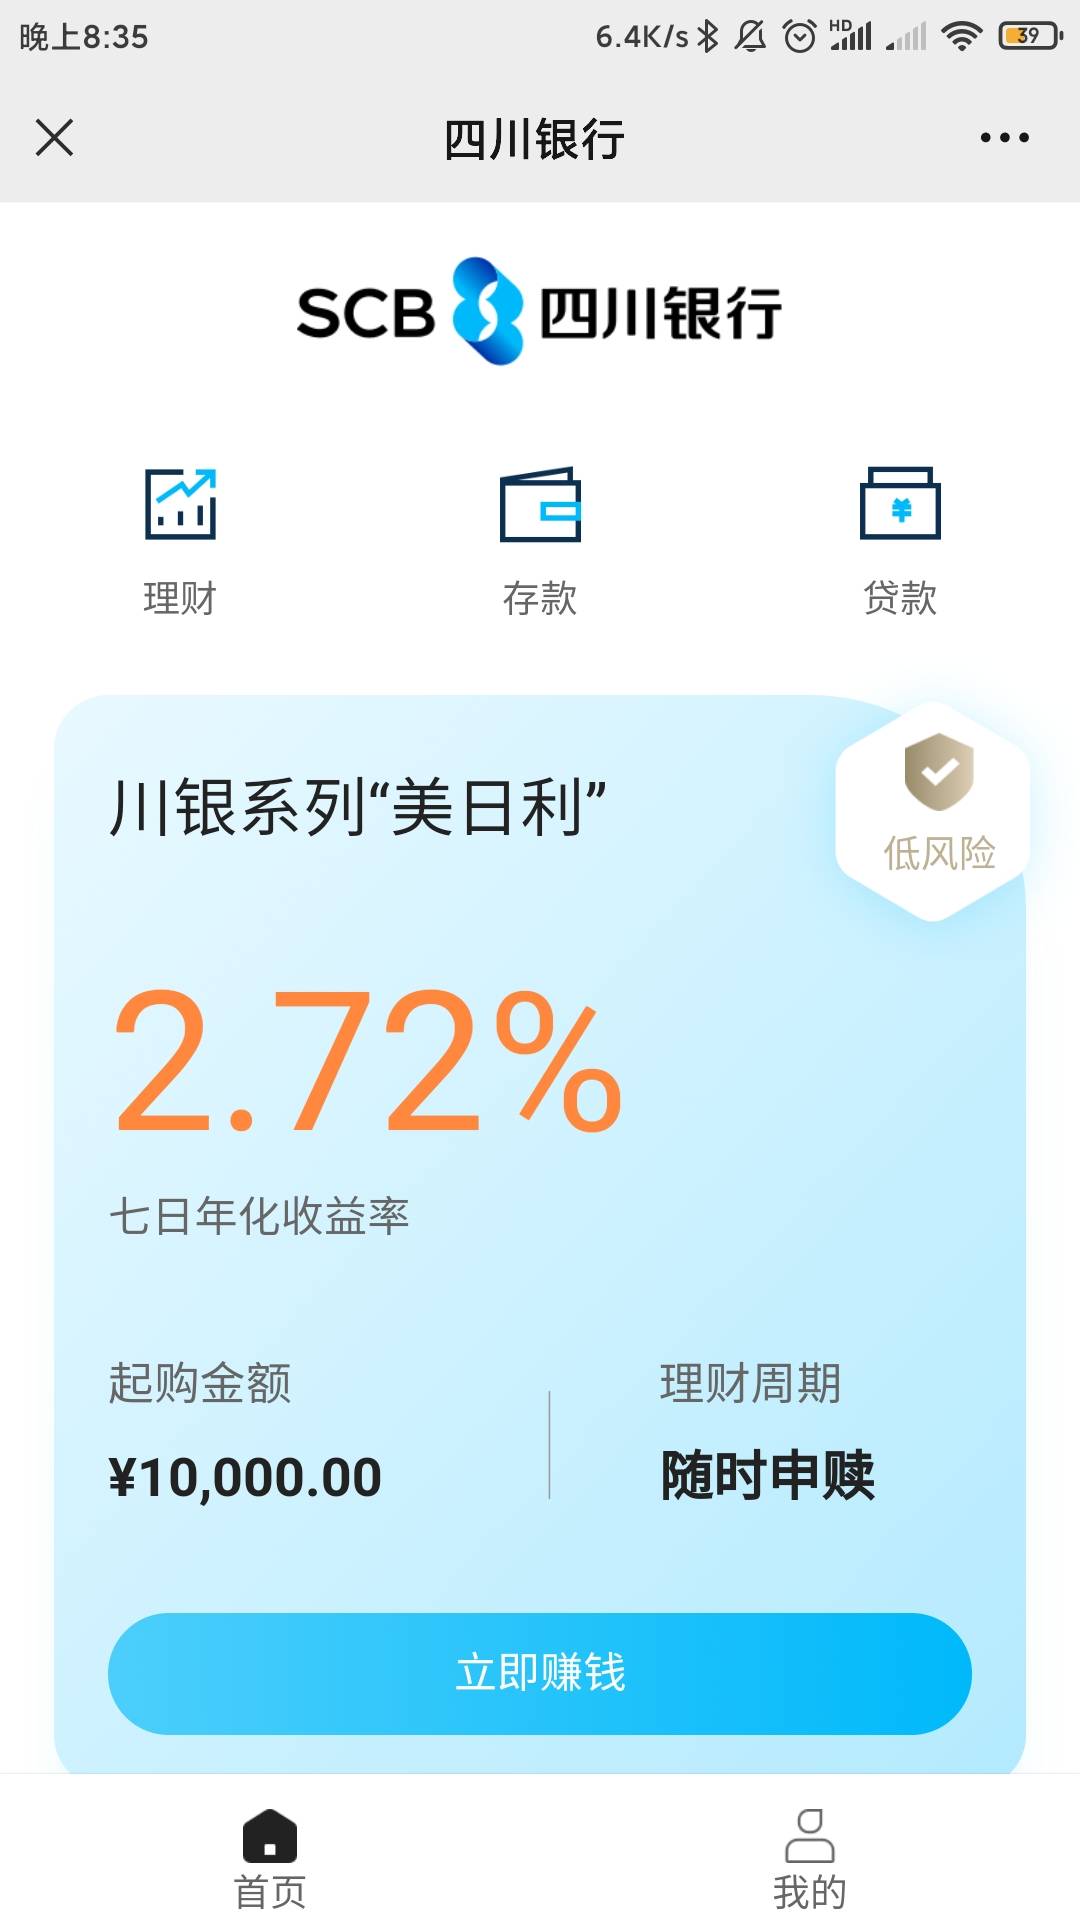 感谢老哥提醒，上个月开过四川银行的微信公众号风险评估5毛可以领的，不用下载，直接97 / 作者:时光不会重来 / 